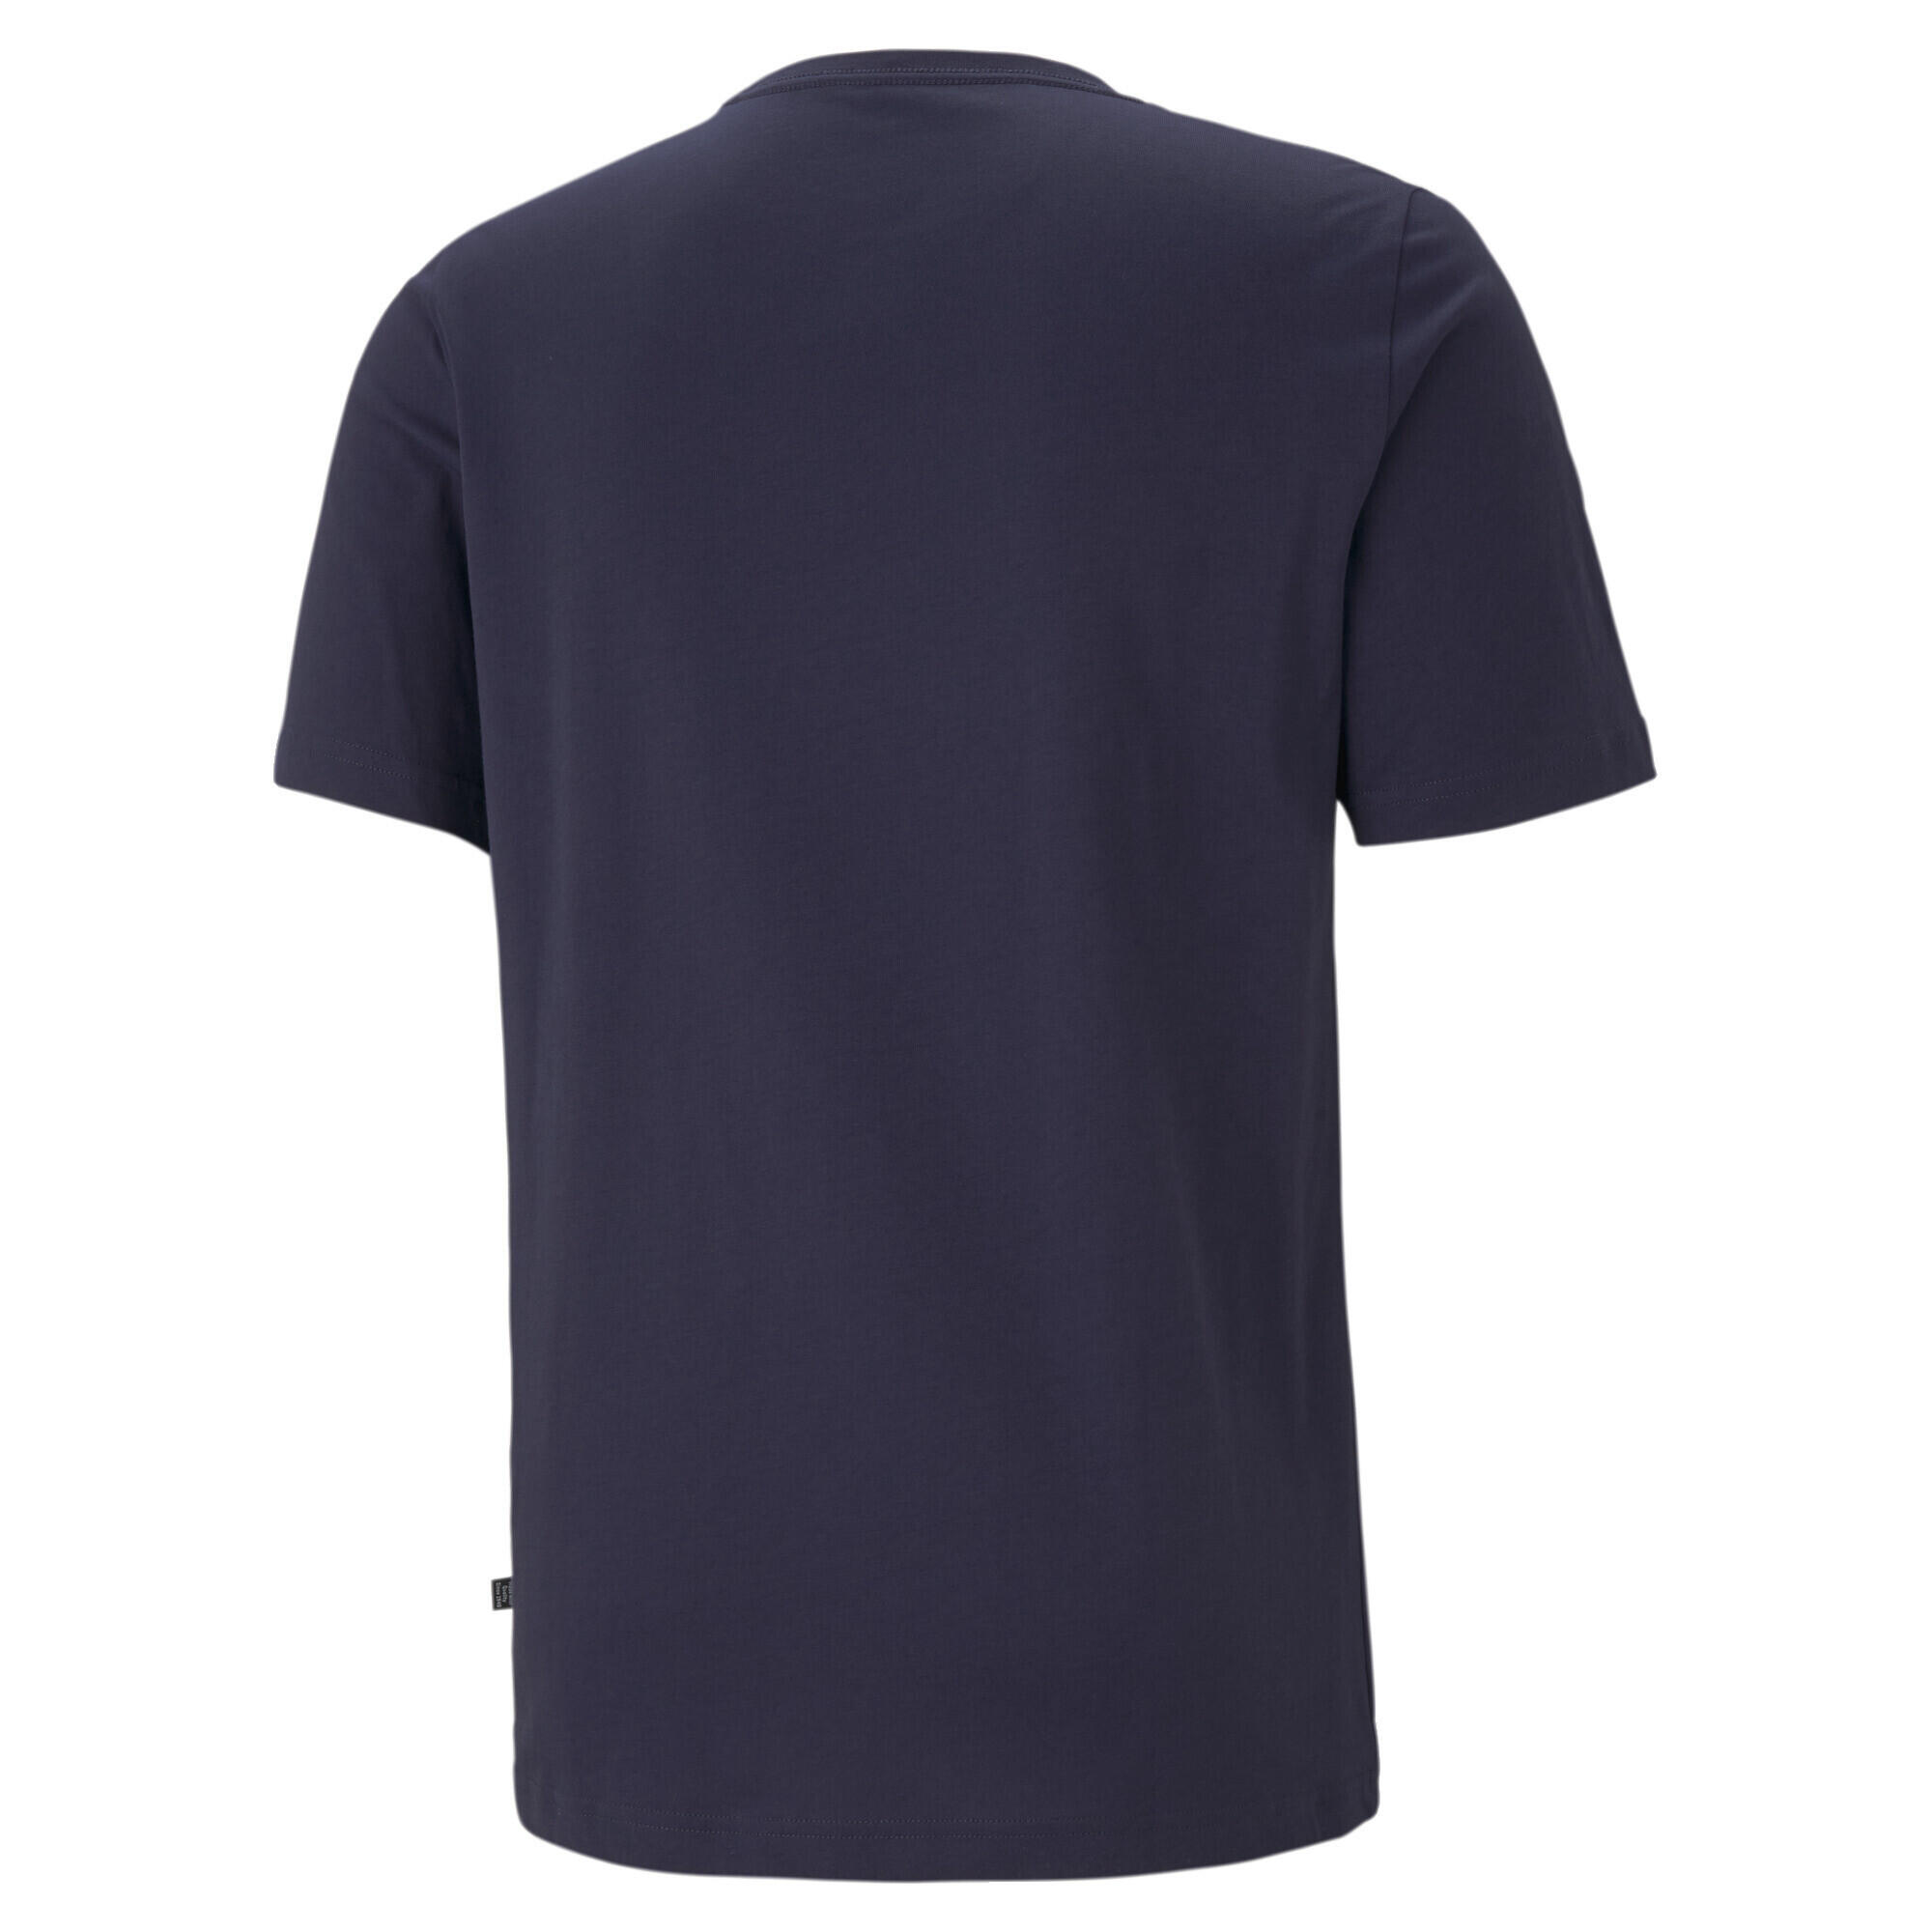 PUMA Mens Essentials Small Logo T-Shirt Tee Top - Peacoat 6/7